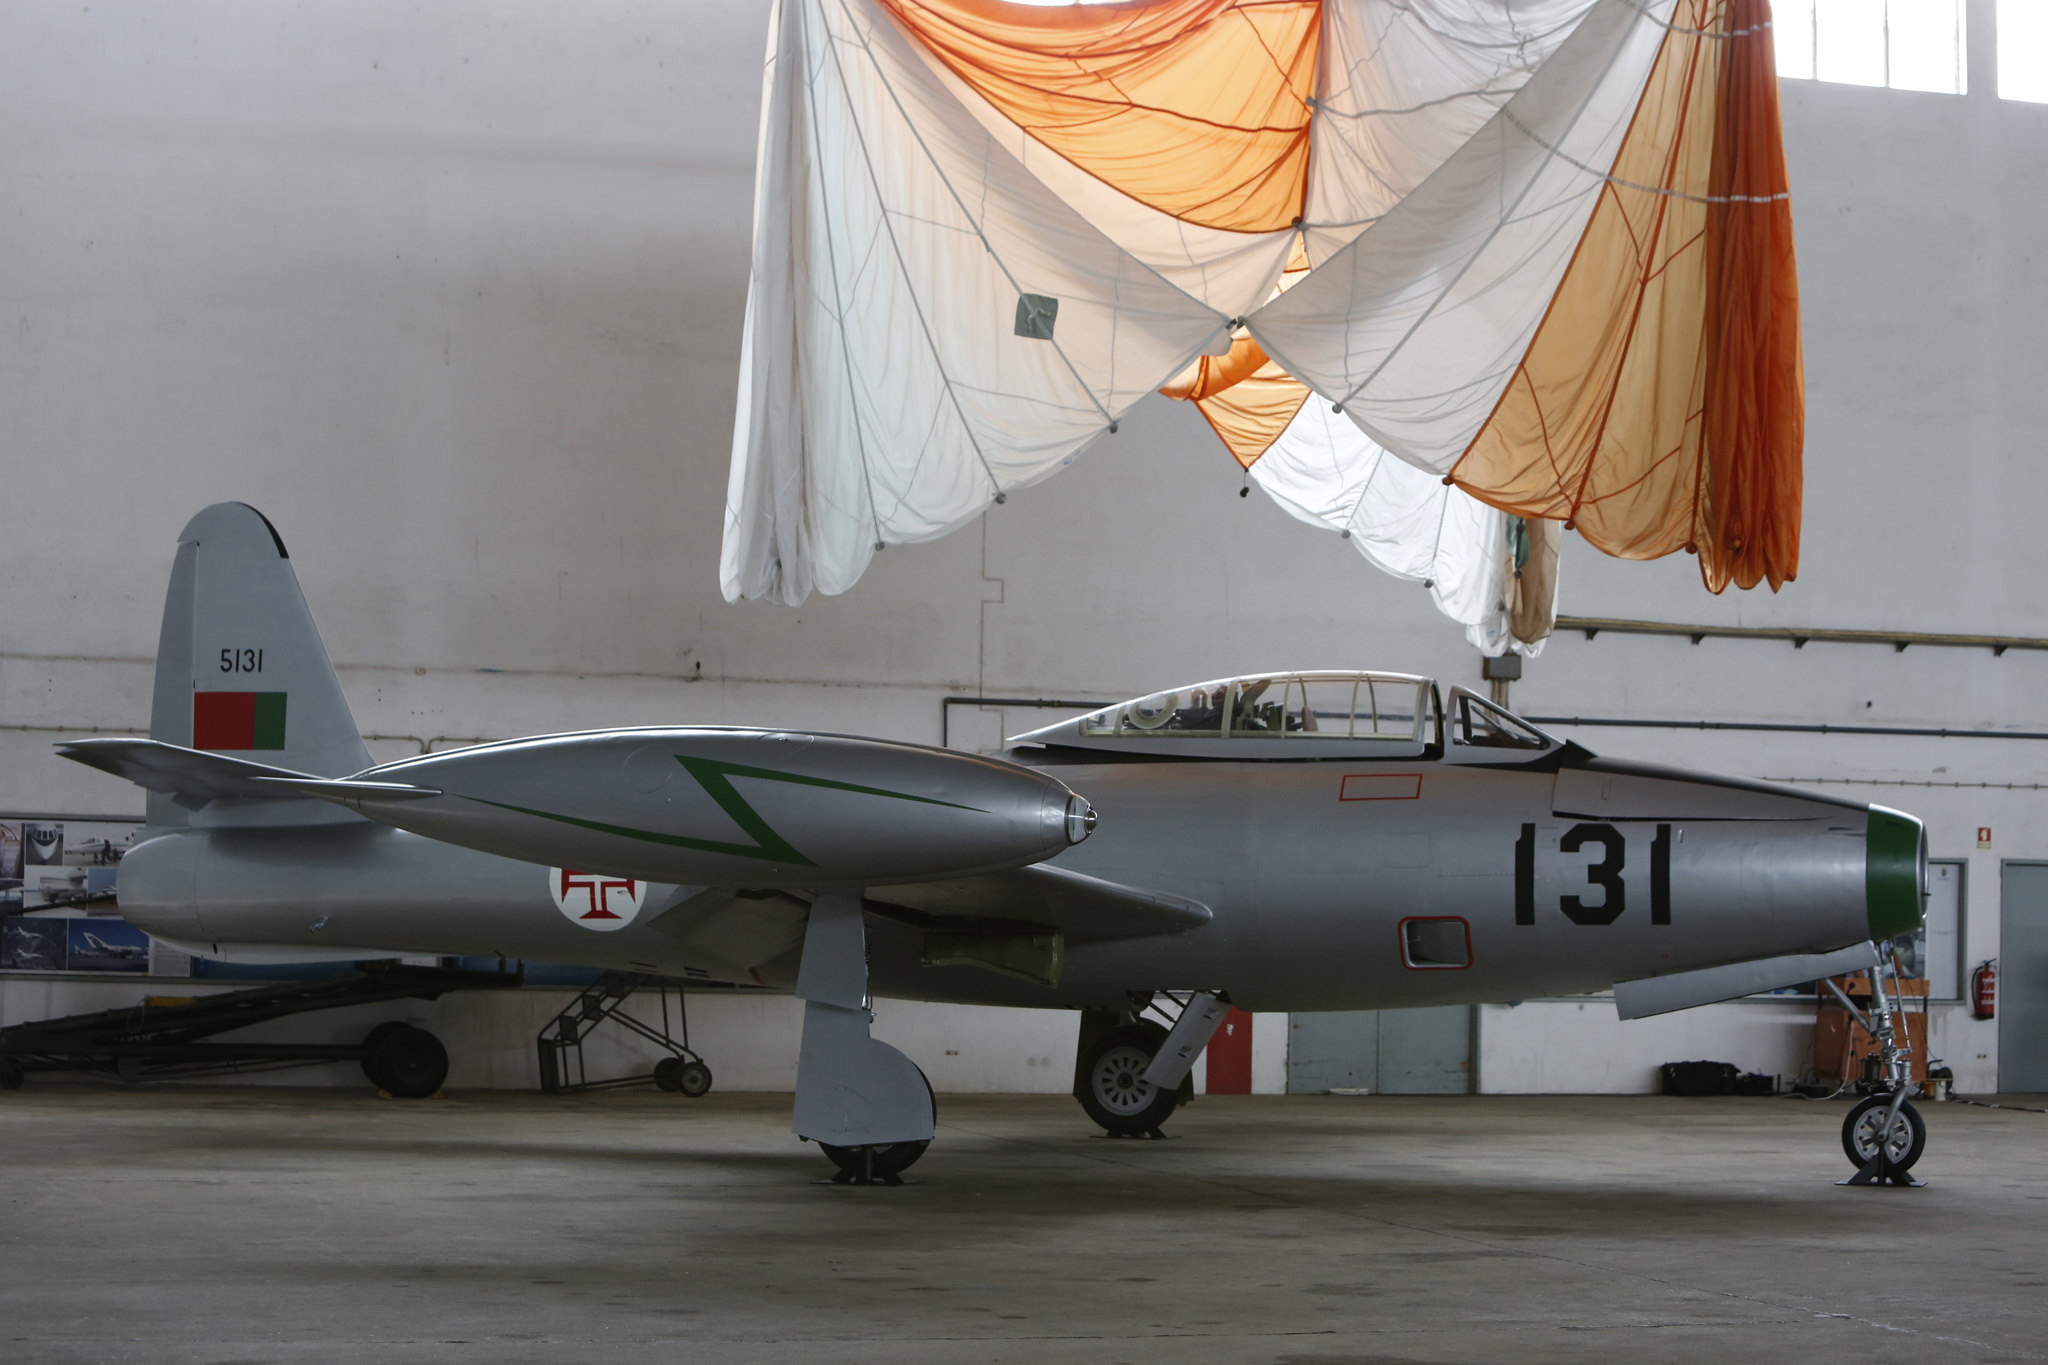 Cerimnia de entrega do F-84G ao Museu do Ar